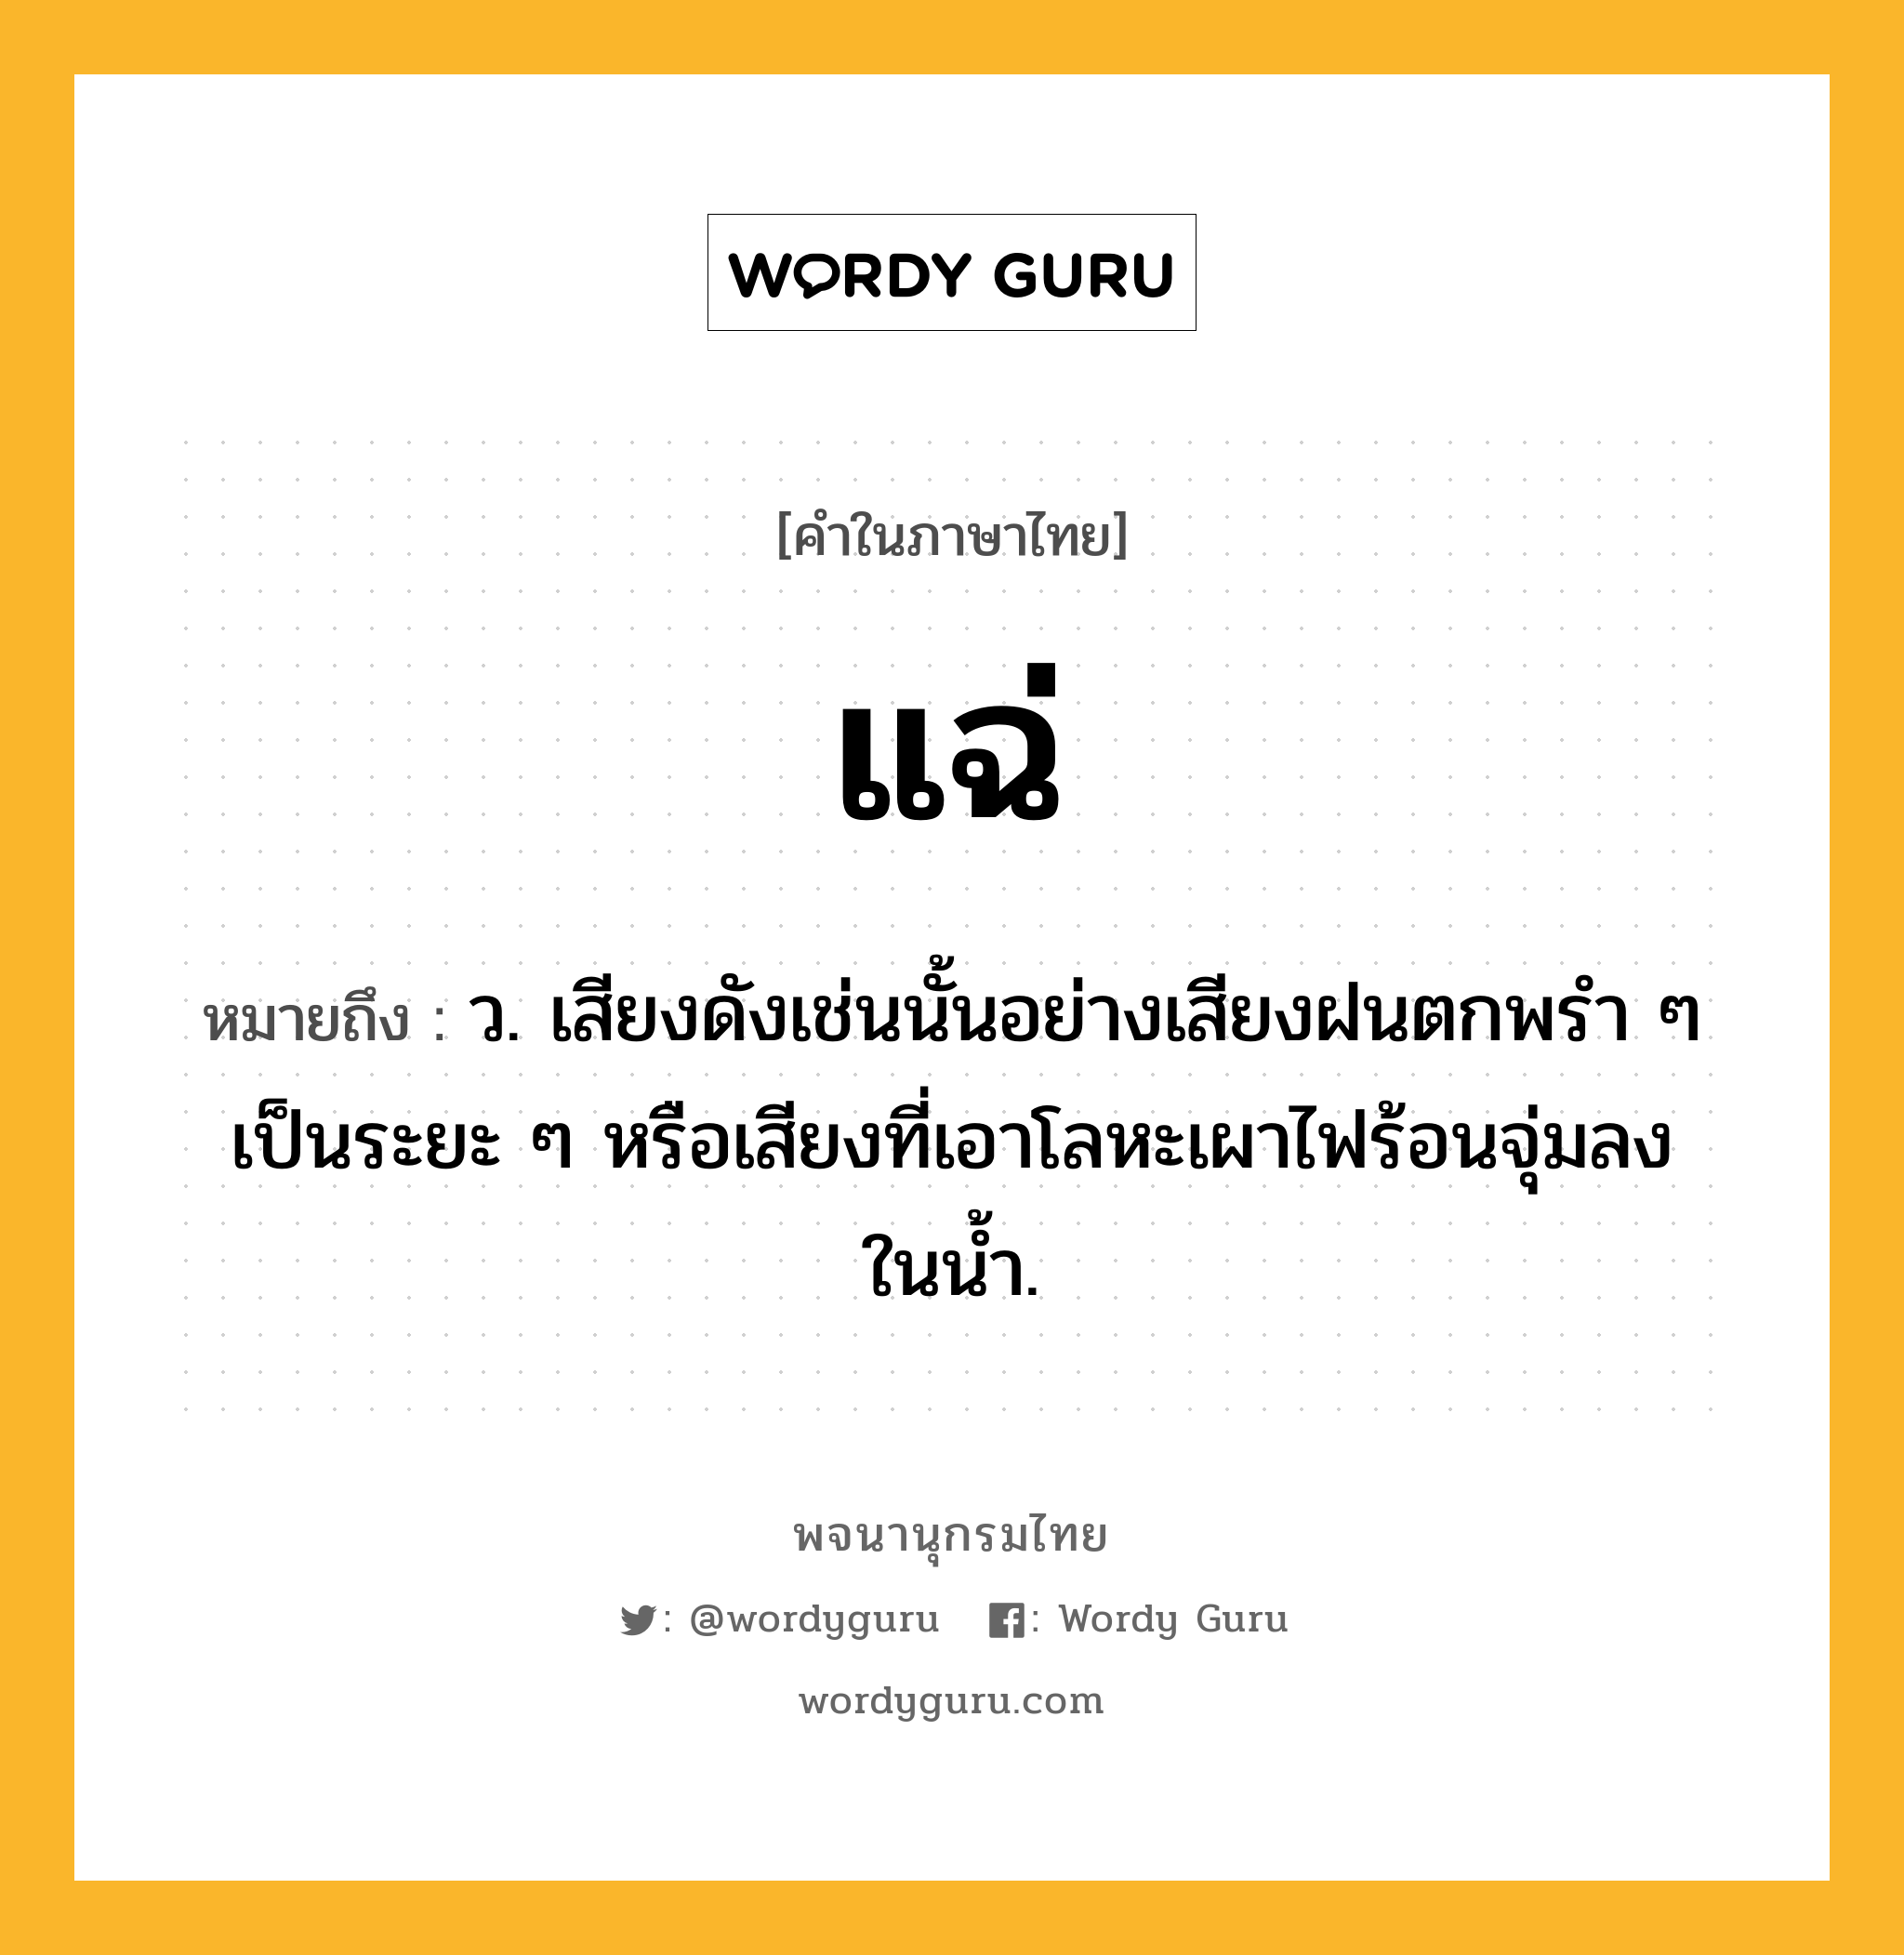 แฉ่ หมายถึงอะไร?, คำในภาษาไทย แฉ่ หมายถึง ว. เสียงดังเช่นนั้นอย่างเสียงฝนตกพรํา ๆ เป็นระยะ ๆ หรือเสียงที่เอาโลหะเผาไฟร้อนจุ่มลงในนํ้า.